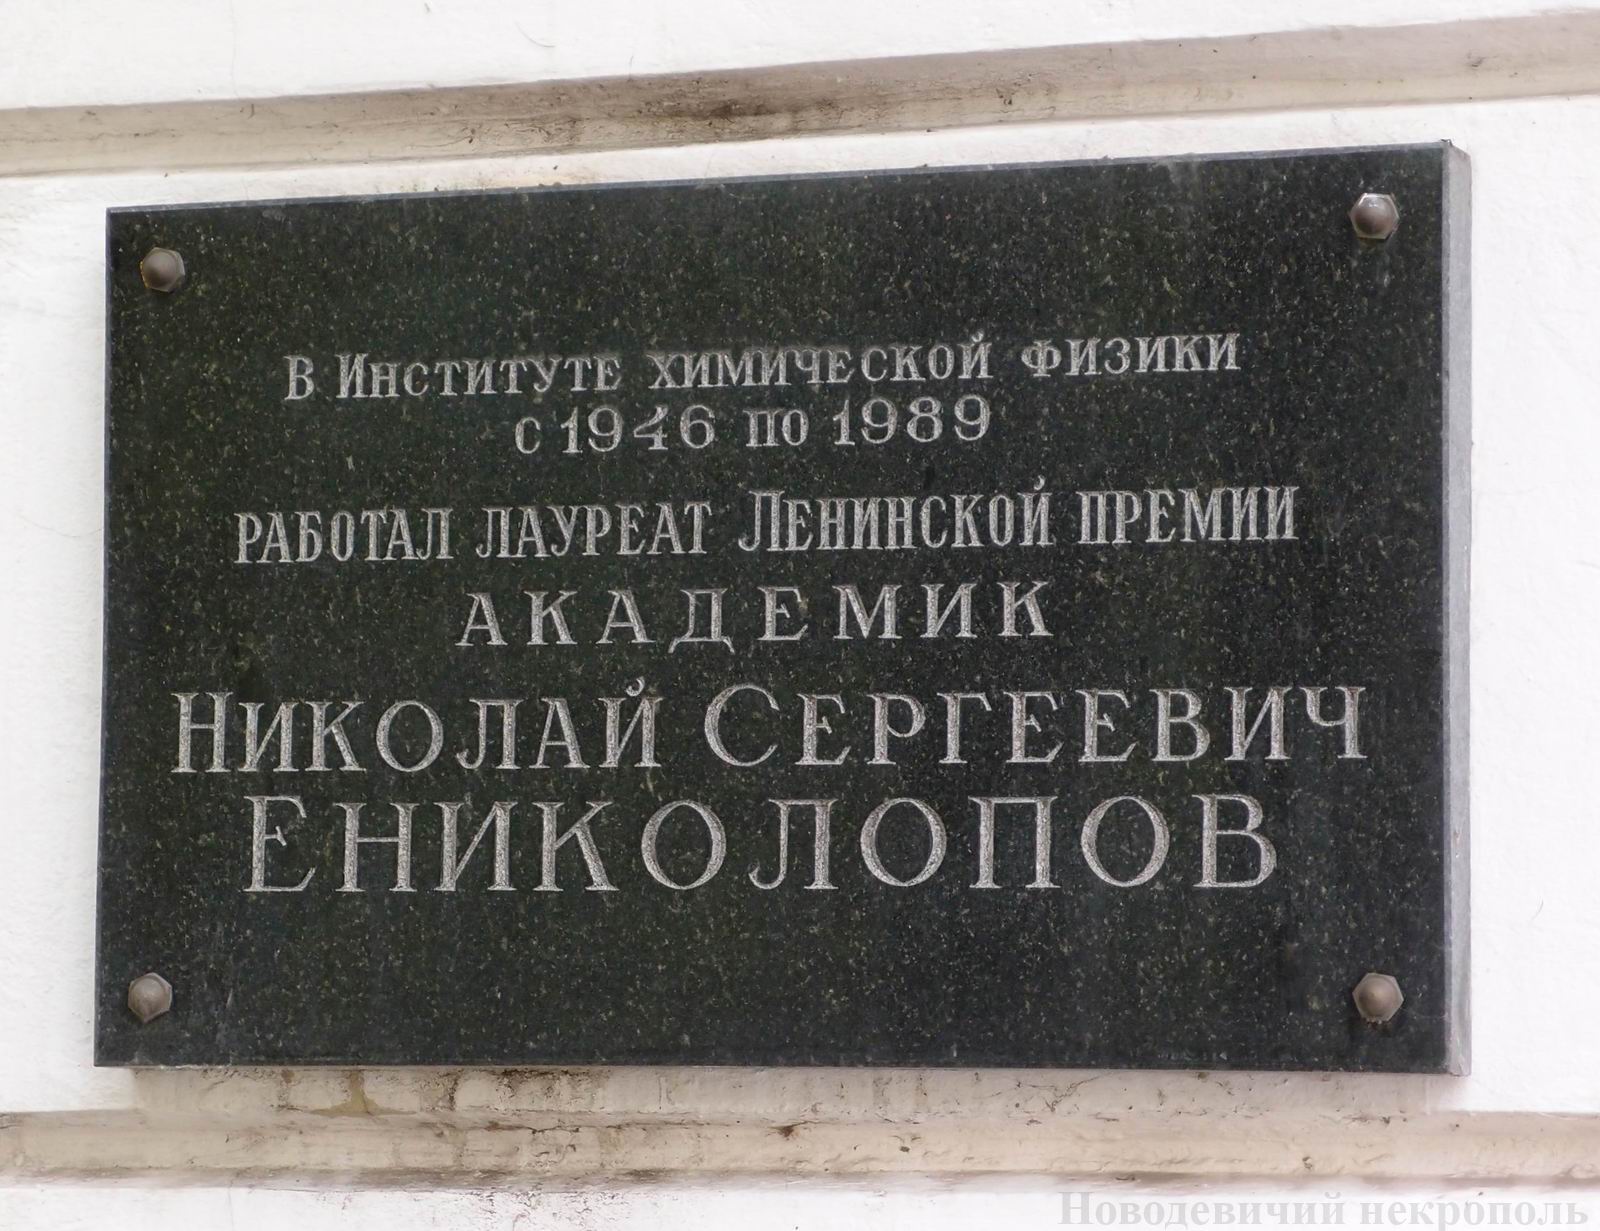 Мемориальная доска Ениколопову Н.С. (1924–1993), на Ленинском проспекте, дом 38, корпус 3, открыта в 2002.